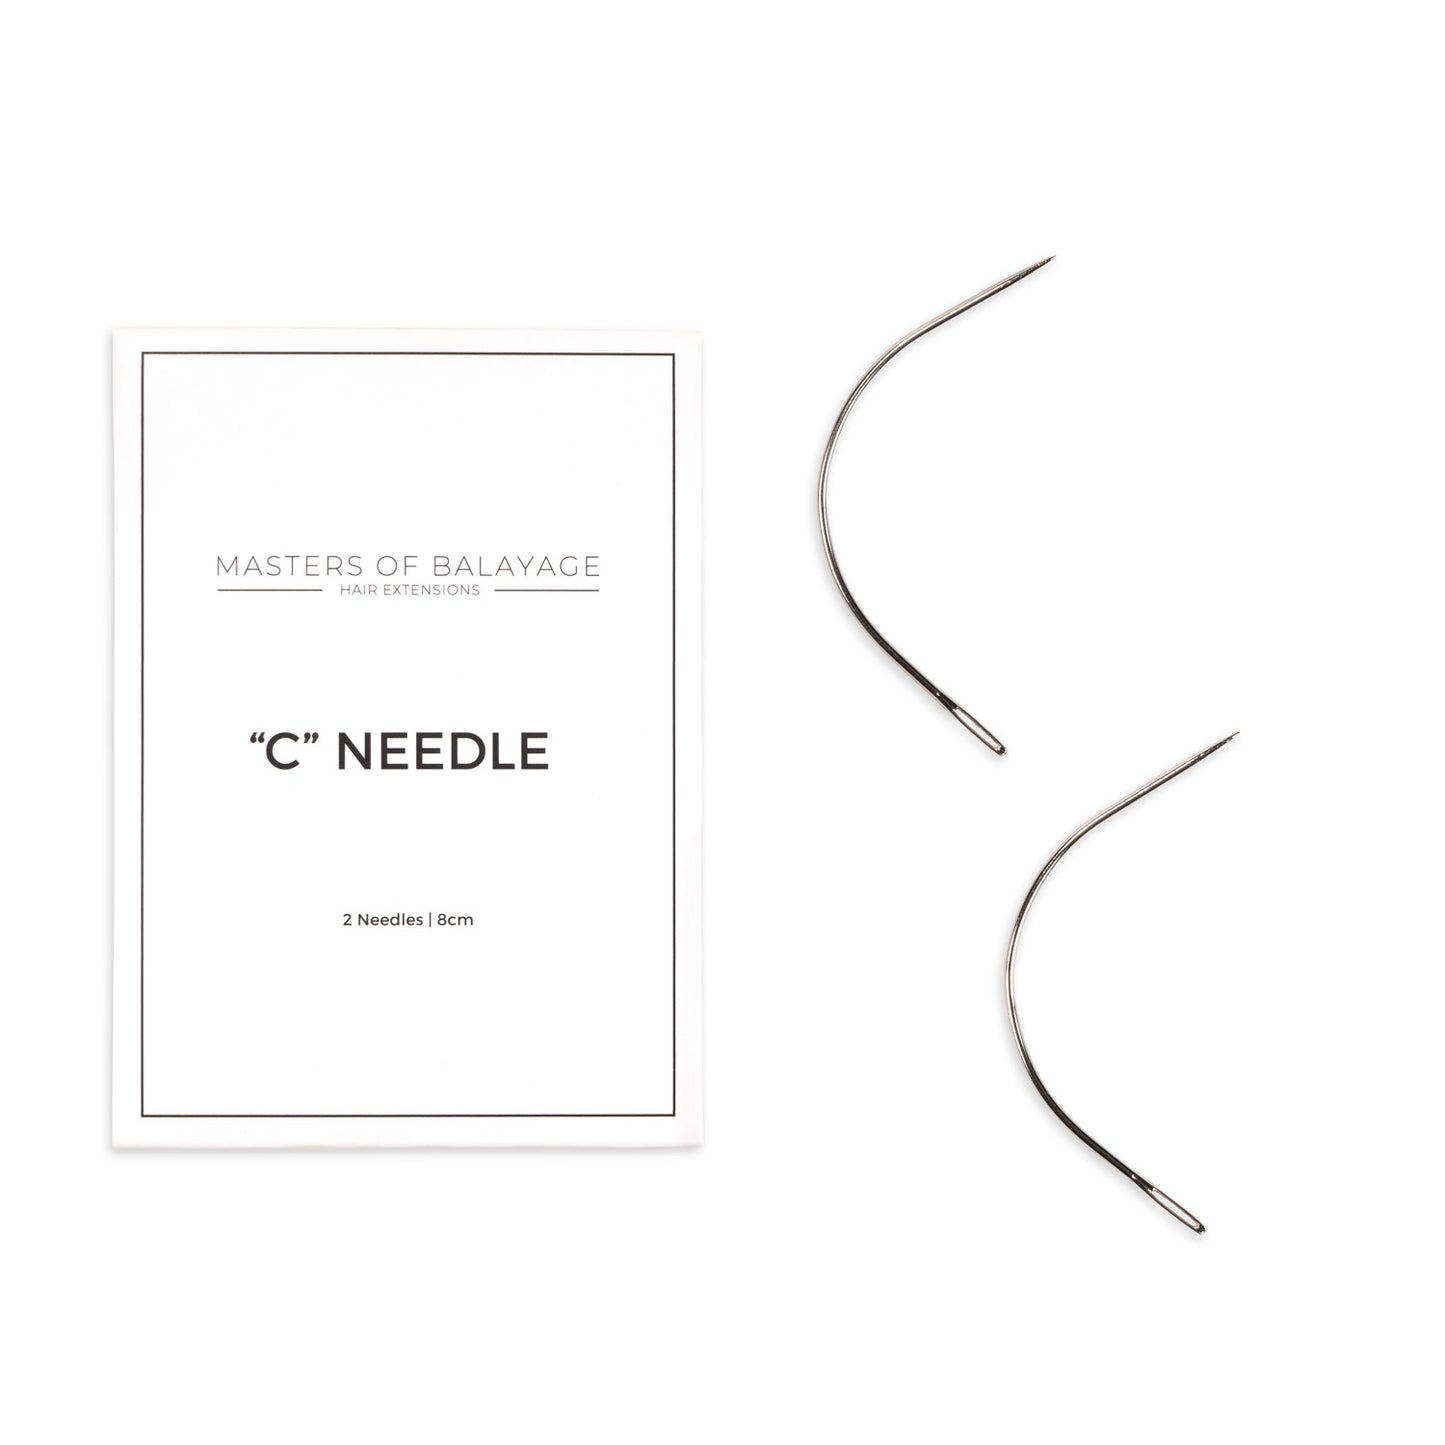 "C" Needle - MSRP